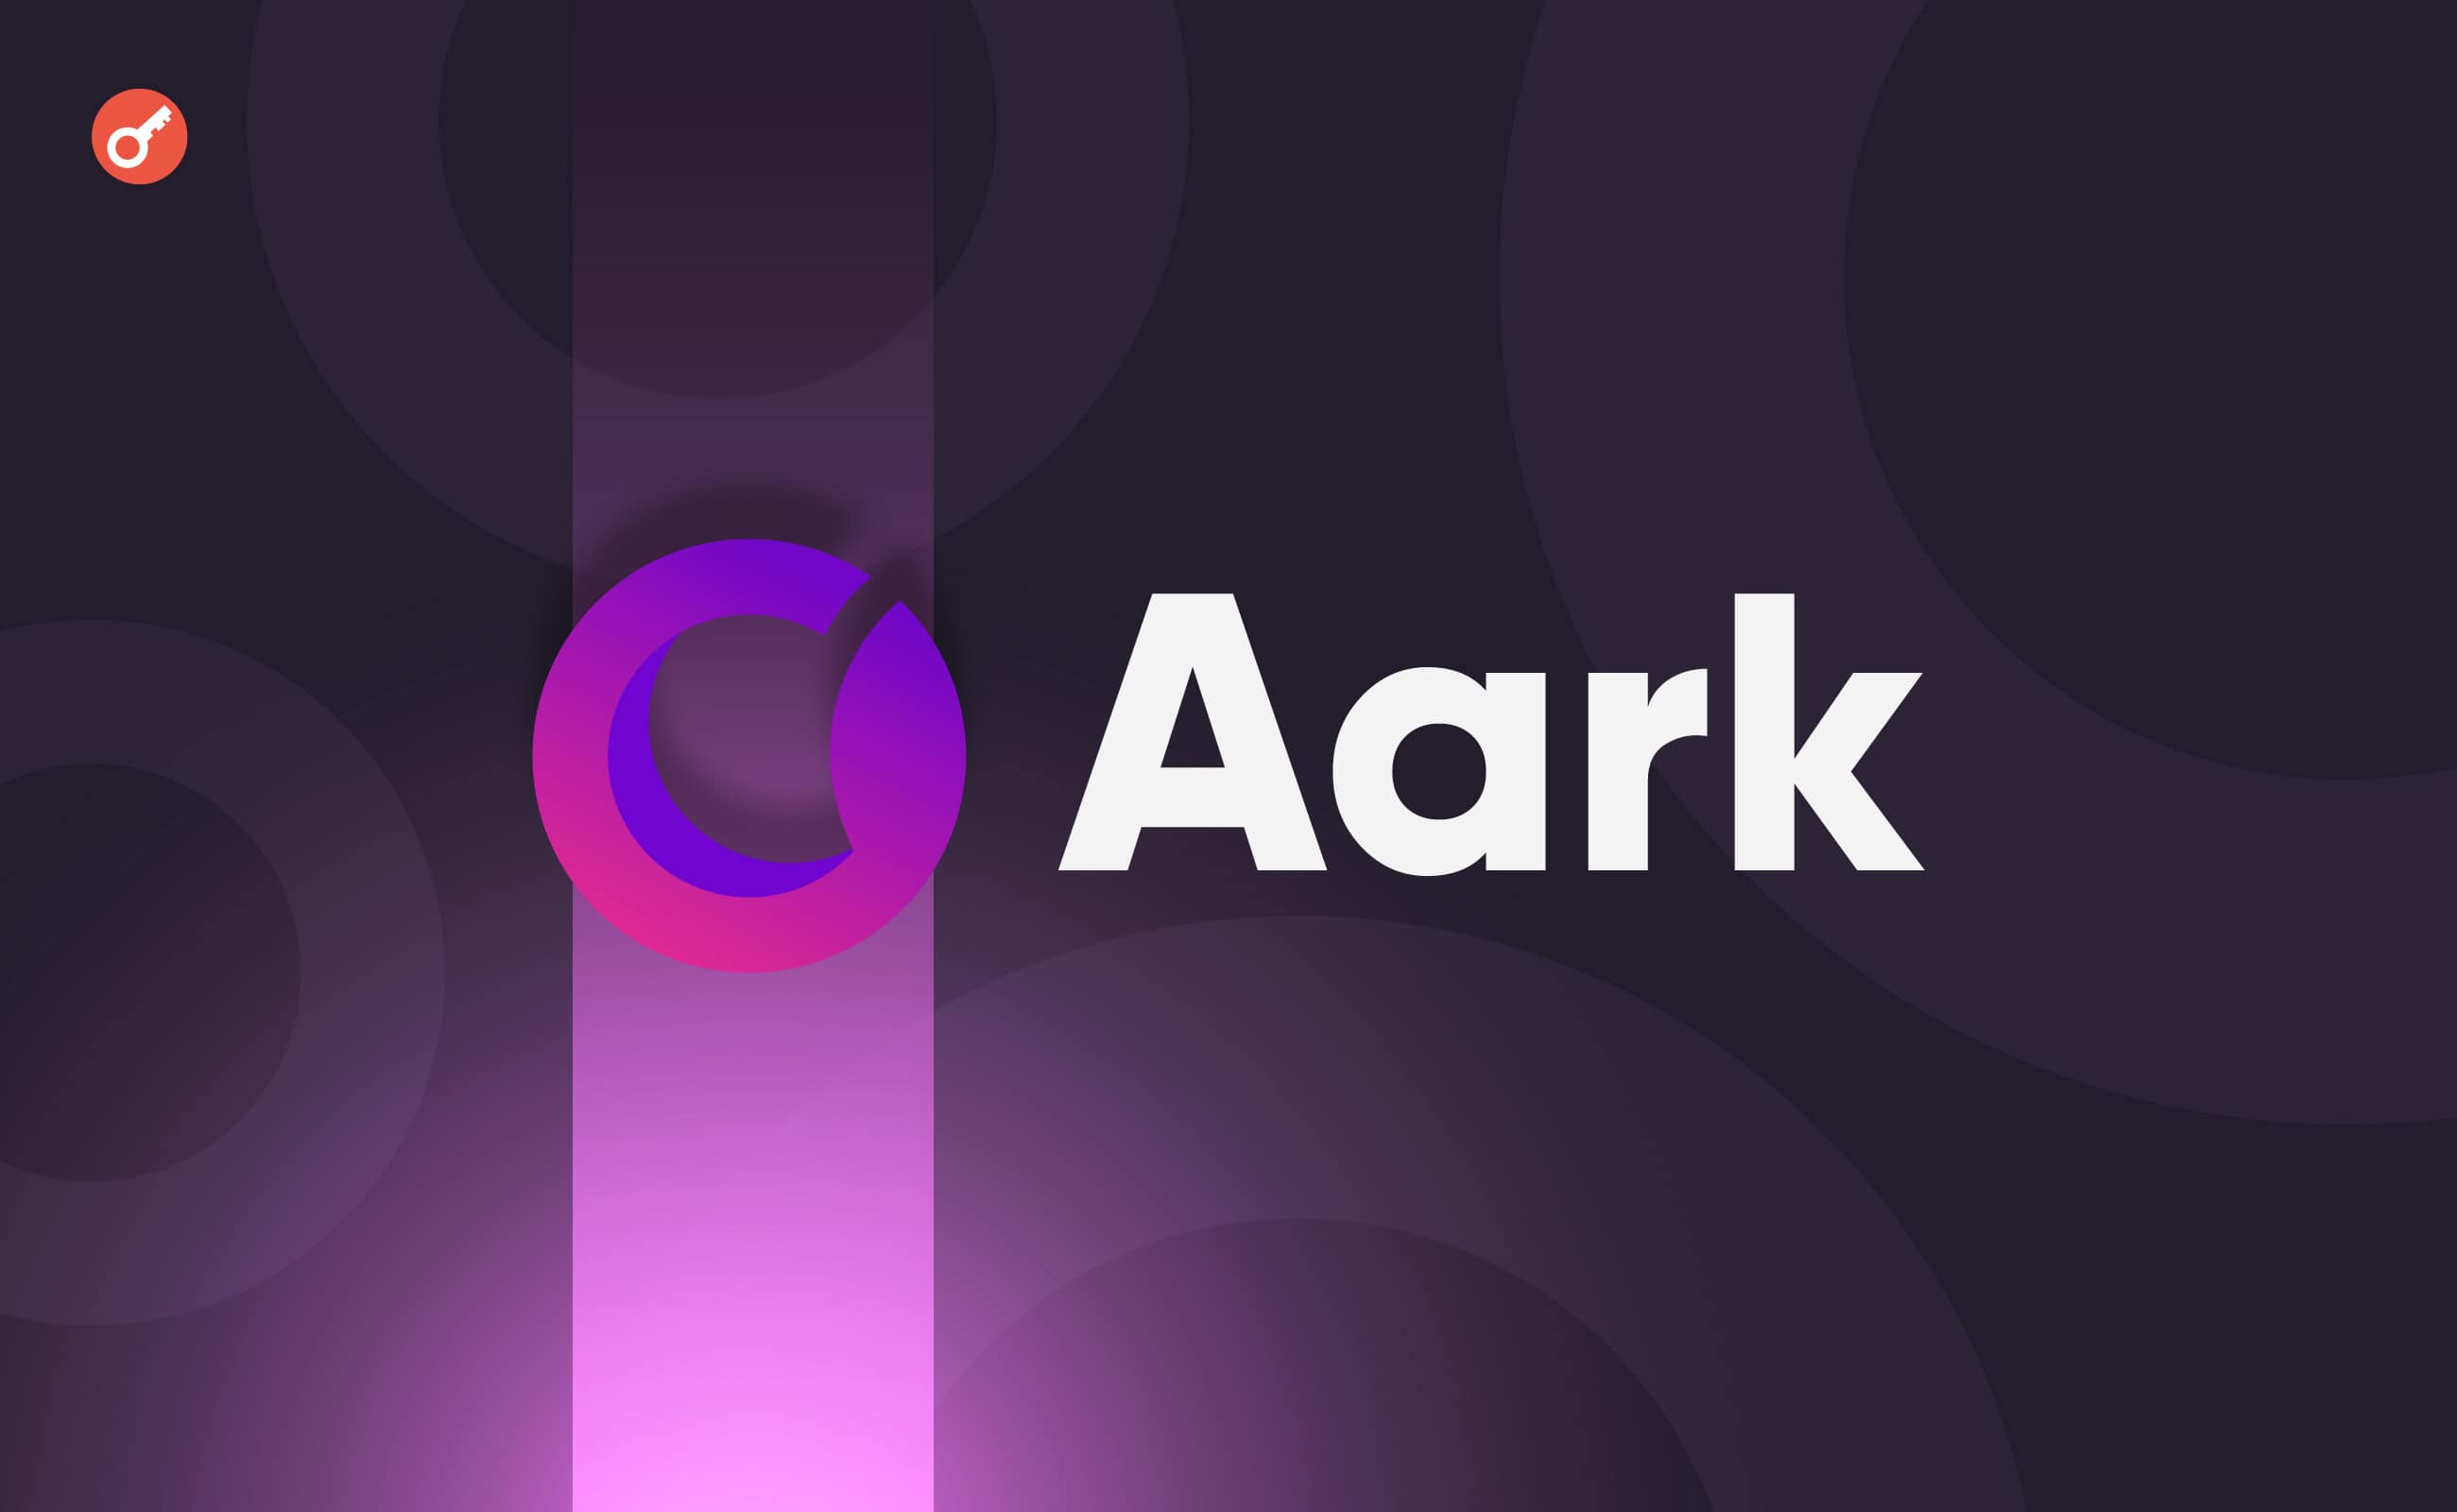 Децентрализованная биржа Aark Digital привлекла $6 млн при участии HashKey Capital. Заглавный коллаж новости.